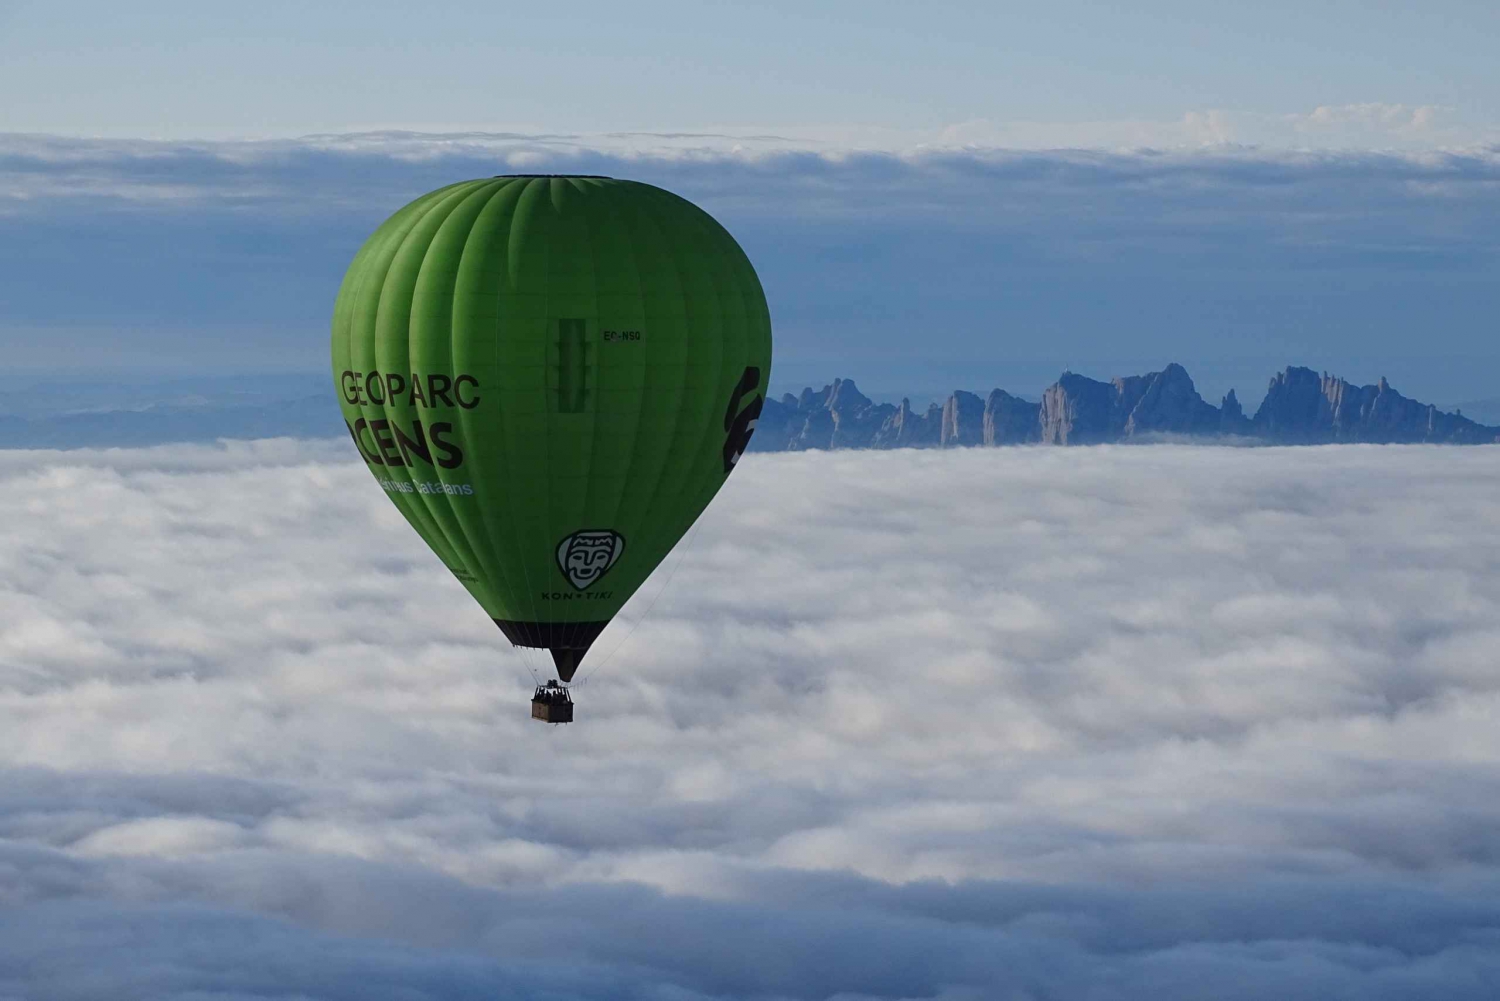 Heißluftballonfahrt und Segelabenteuer ab Barcelona